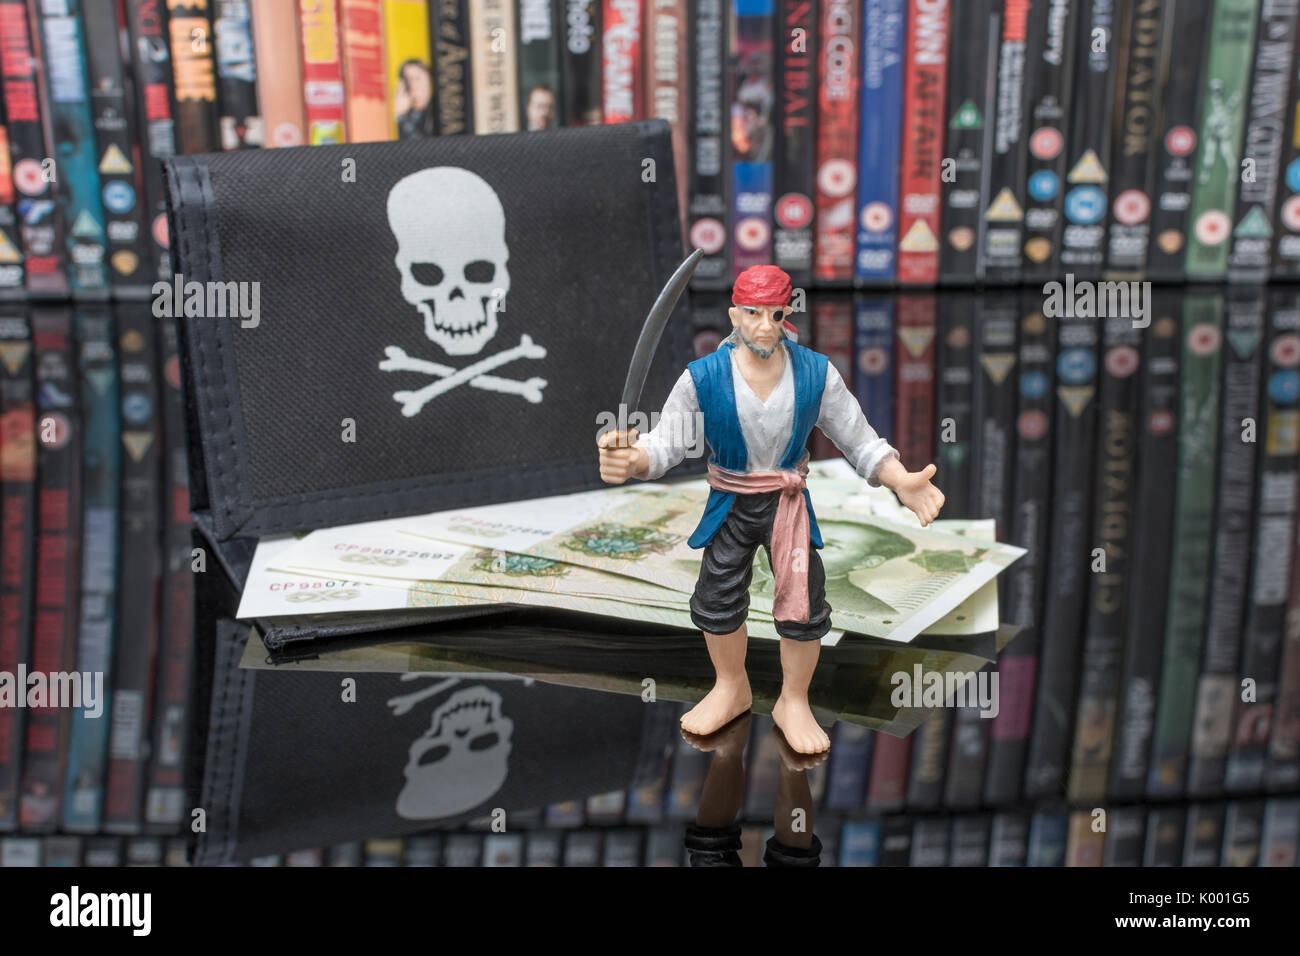 La spada wielding pirata giocattolo in piedi accanto a pile di DVD (Disco versatile digitale) - metafora della pirateria del software, Cinese merci contraffatte e il furto di IP. Foto Stock